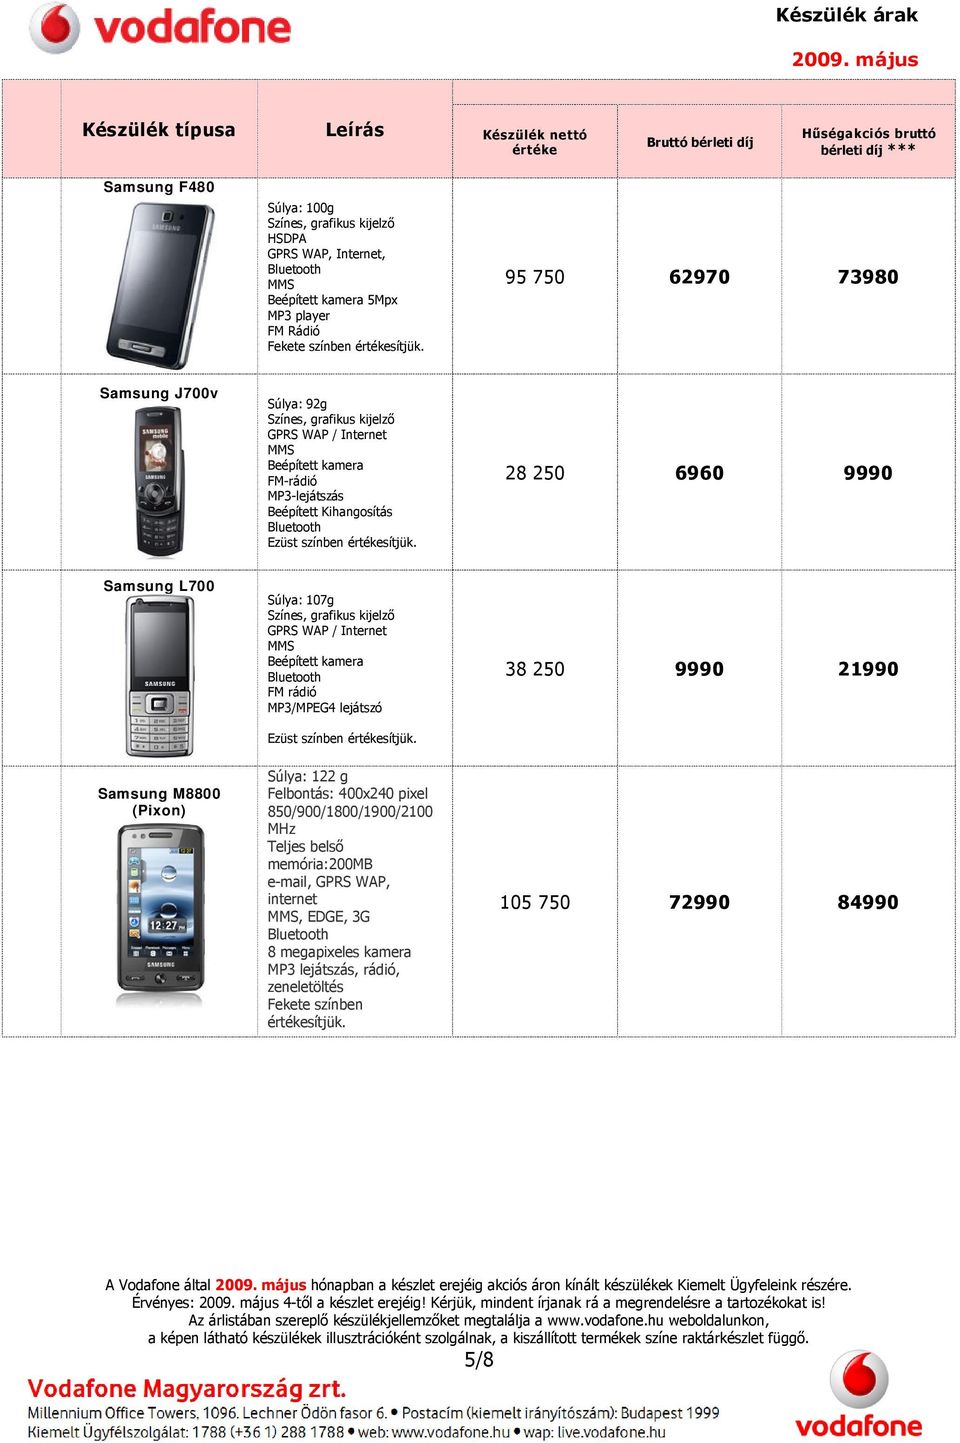 színben 38 250 9990 21990 Samsung M8800 (Pixon) Súlya: 122 g Felbontás: 400x240 pixel 850/900/1800/1900/2100 MHz Teljes belső